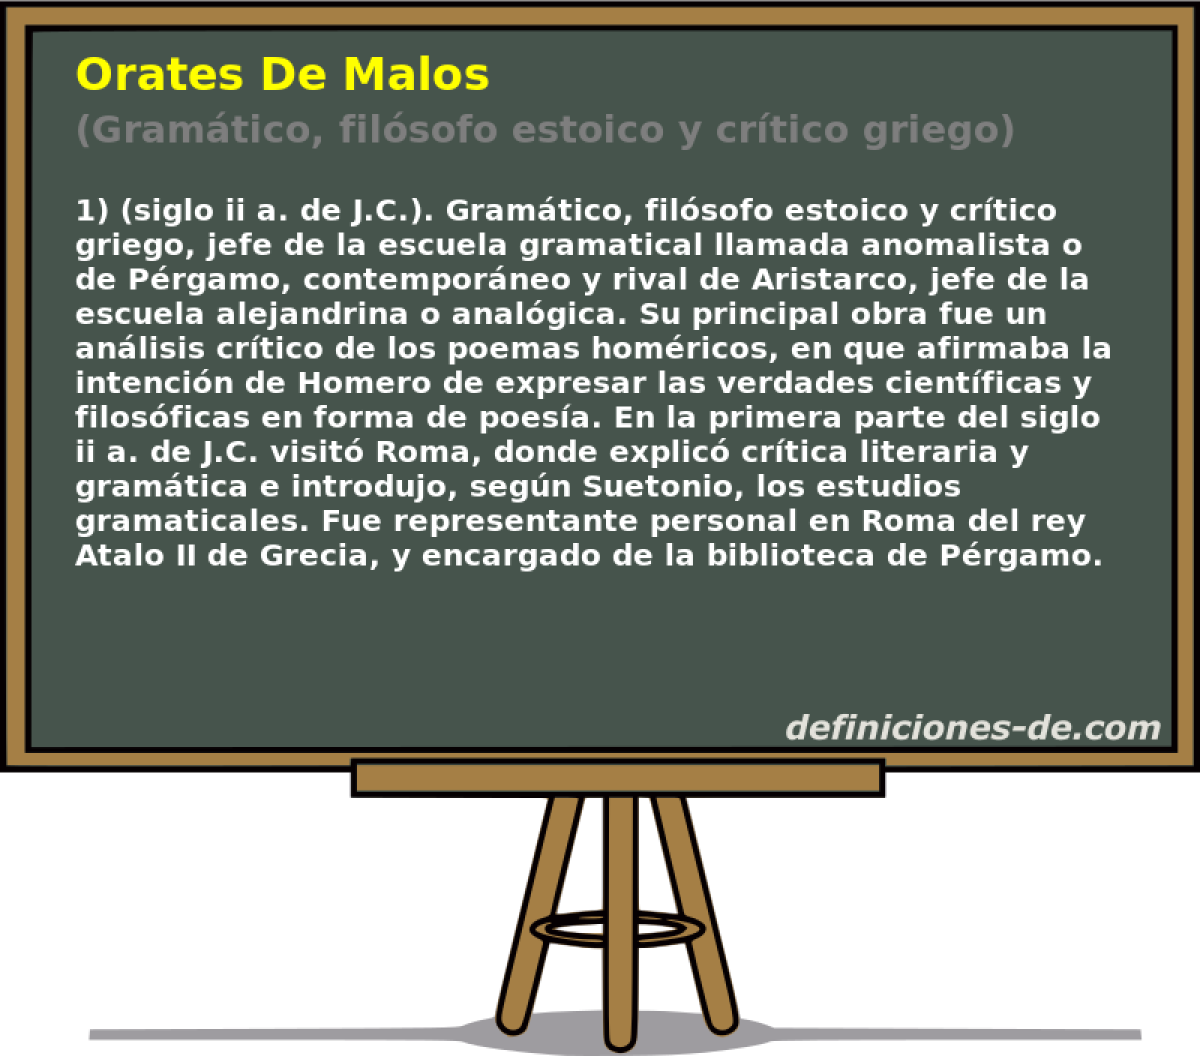 Orates De Malos (Gramtico, filsofo estoico y crtico griego)